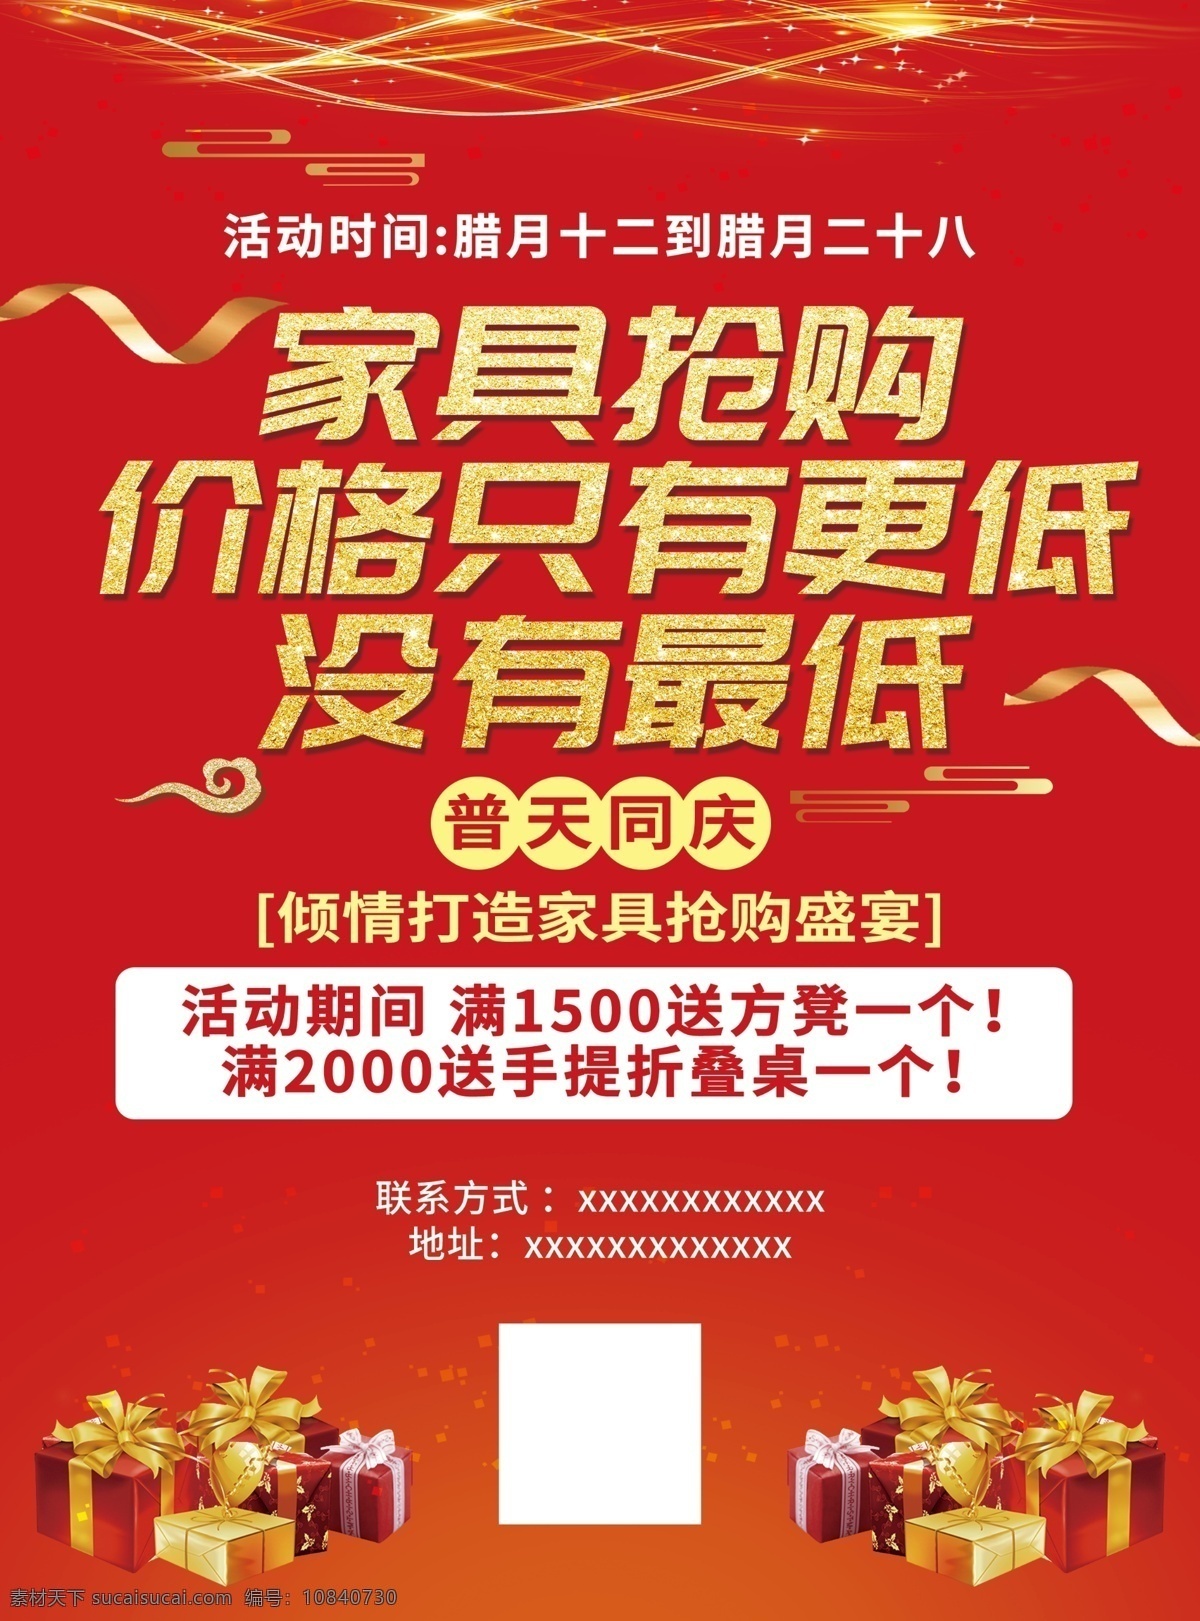 家具活动 家具 开业 活动 红色 喜庆 宣传单 海报 dm宣传单